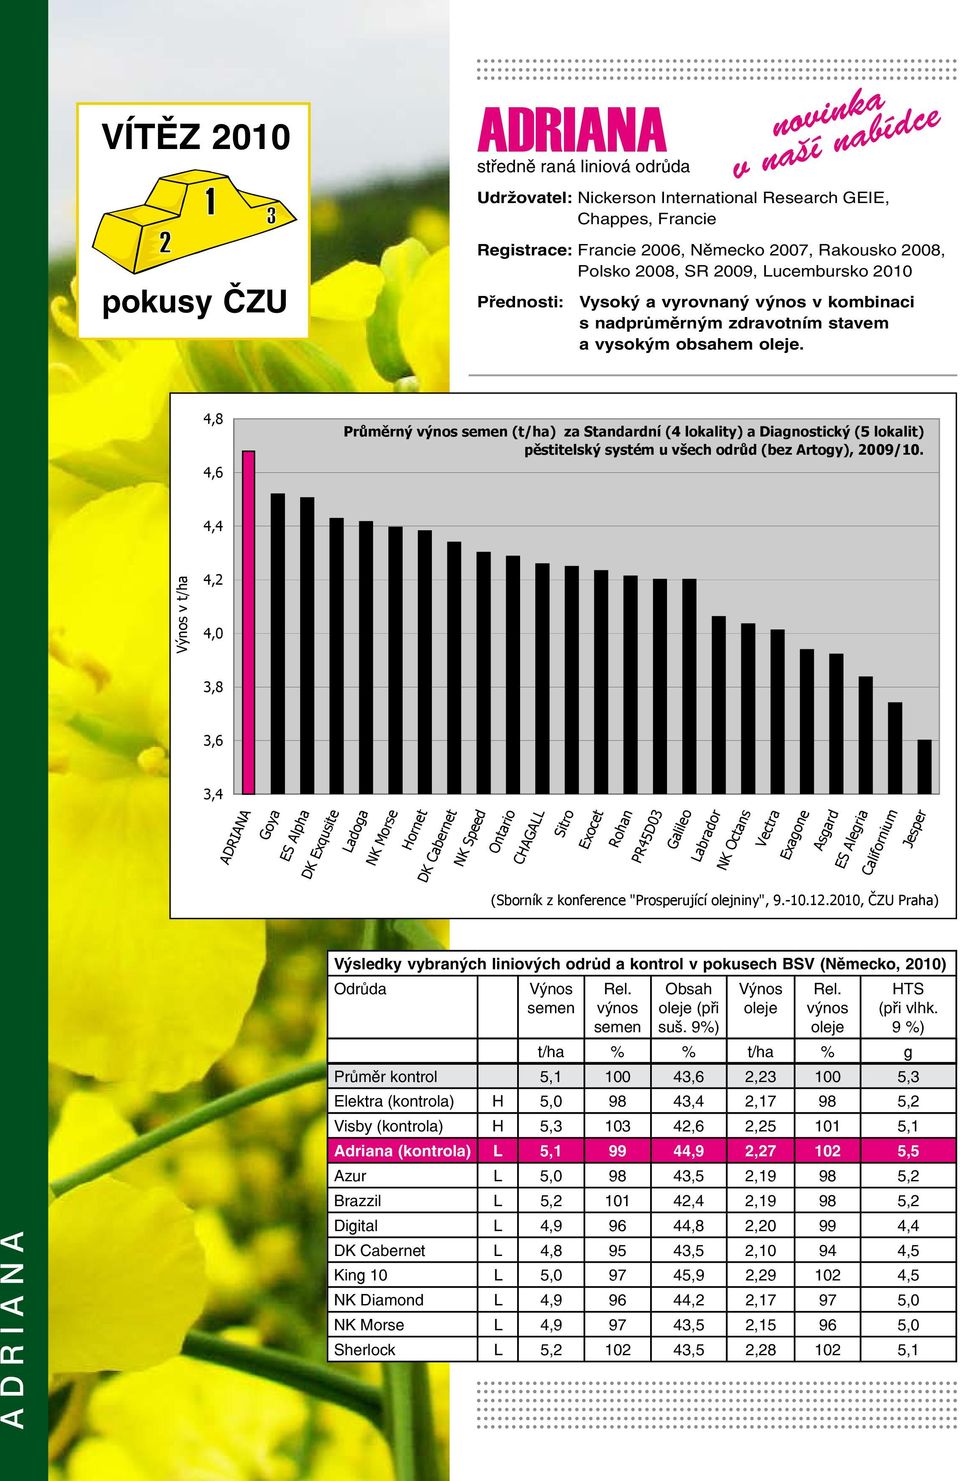 adriana Výsledky vybraných liniových odrůd a kontrol v pokusech BSV (Německo, 2010) Odrůda Výnos semen Výnos oleje Rel. výnos semen Obsah oleje (při suš. 9%) Rel. výnos oleje HTS (při vlhk.